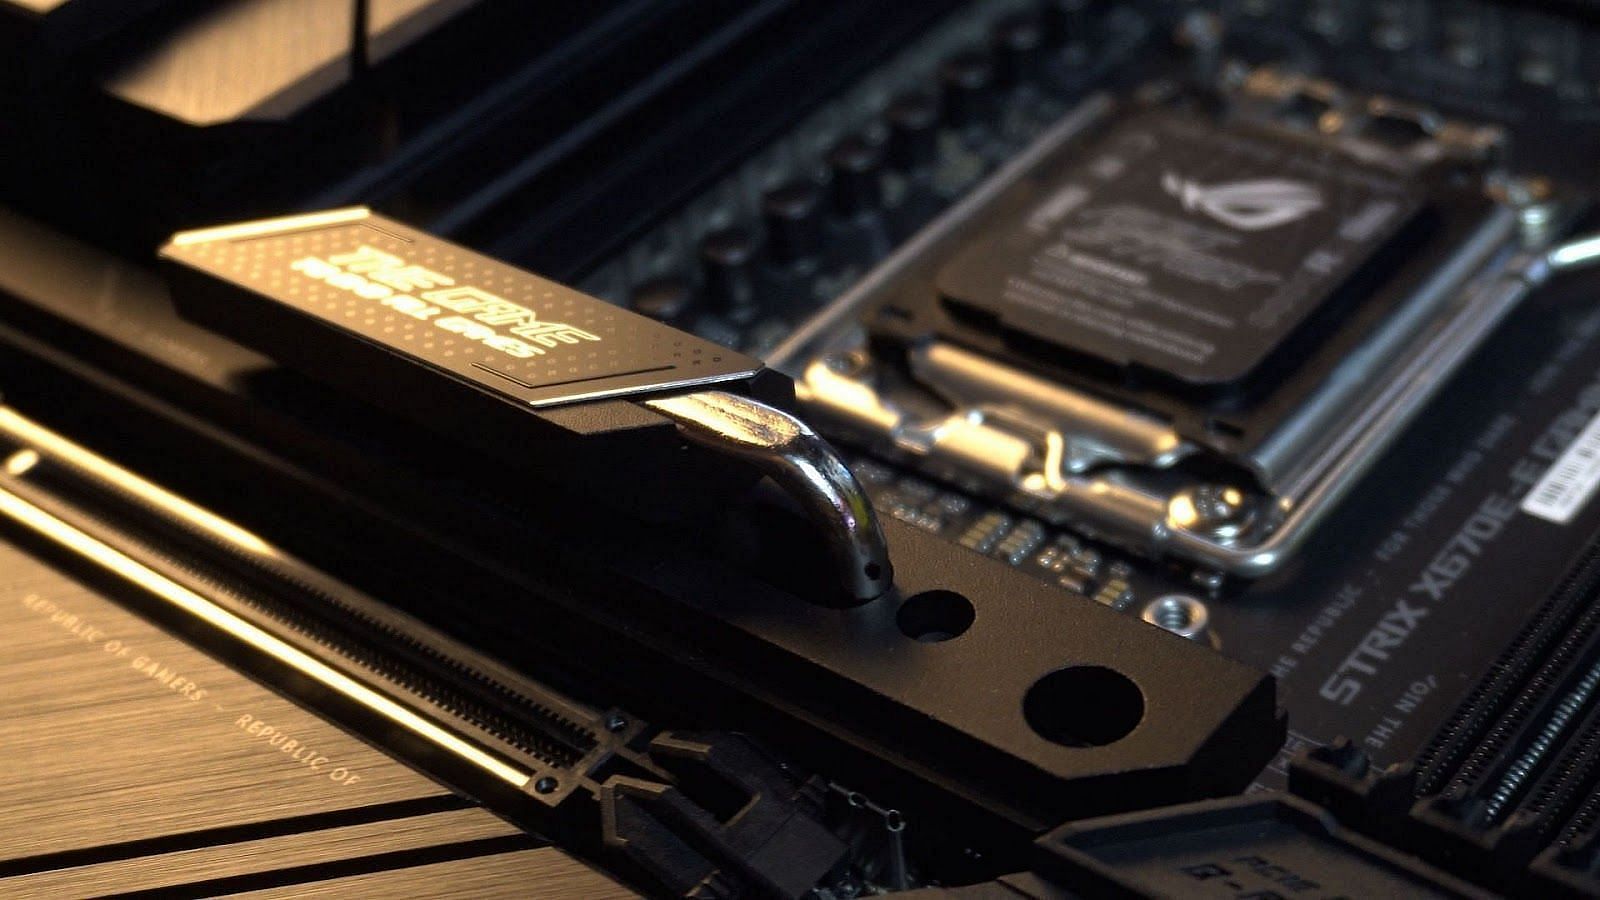 The PCIe Gen 5 SSD heatsink on the ASUS motherboard (Image via Sportskeeda)